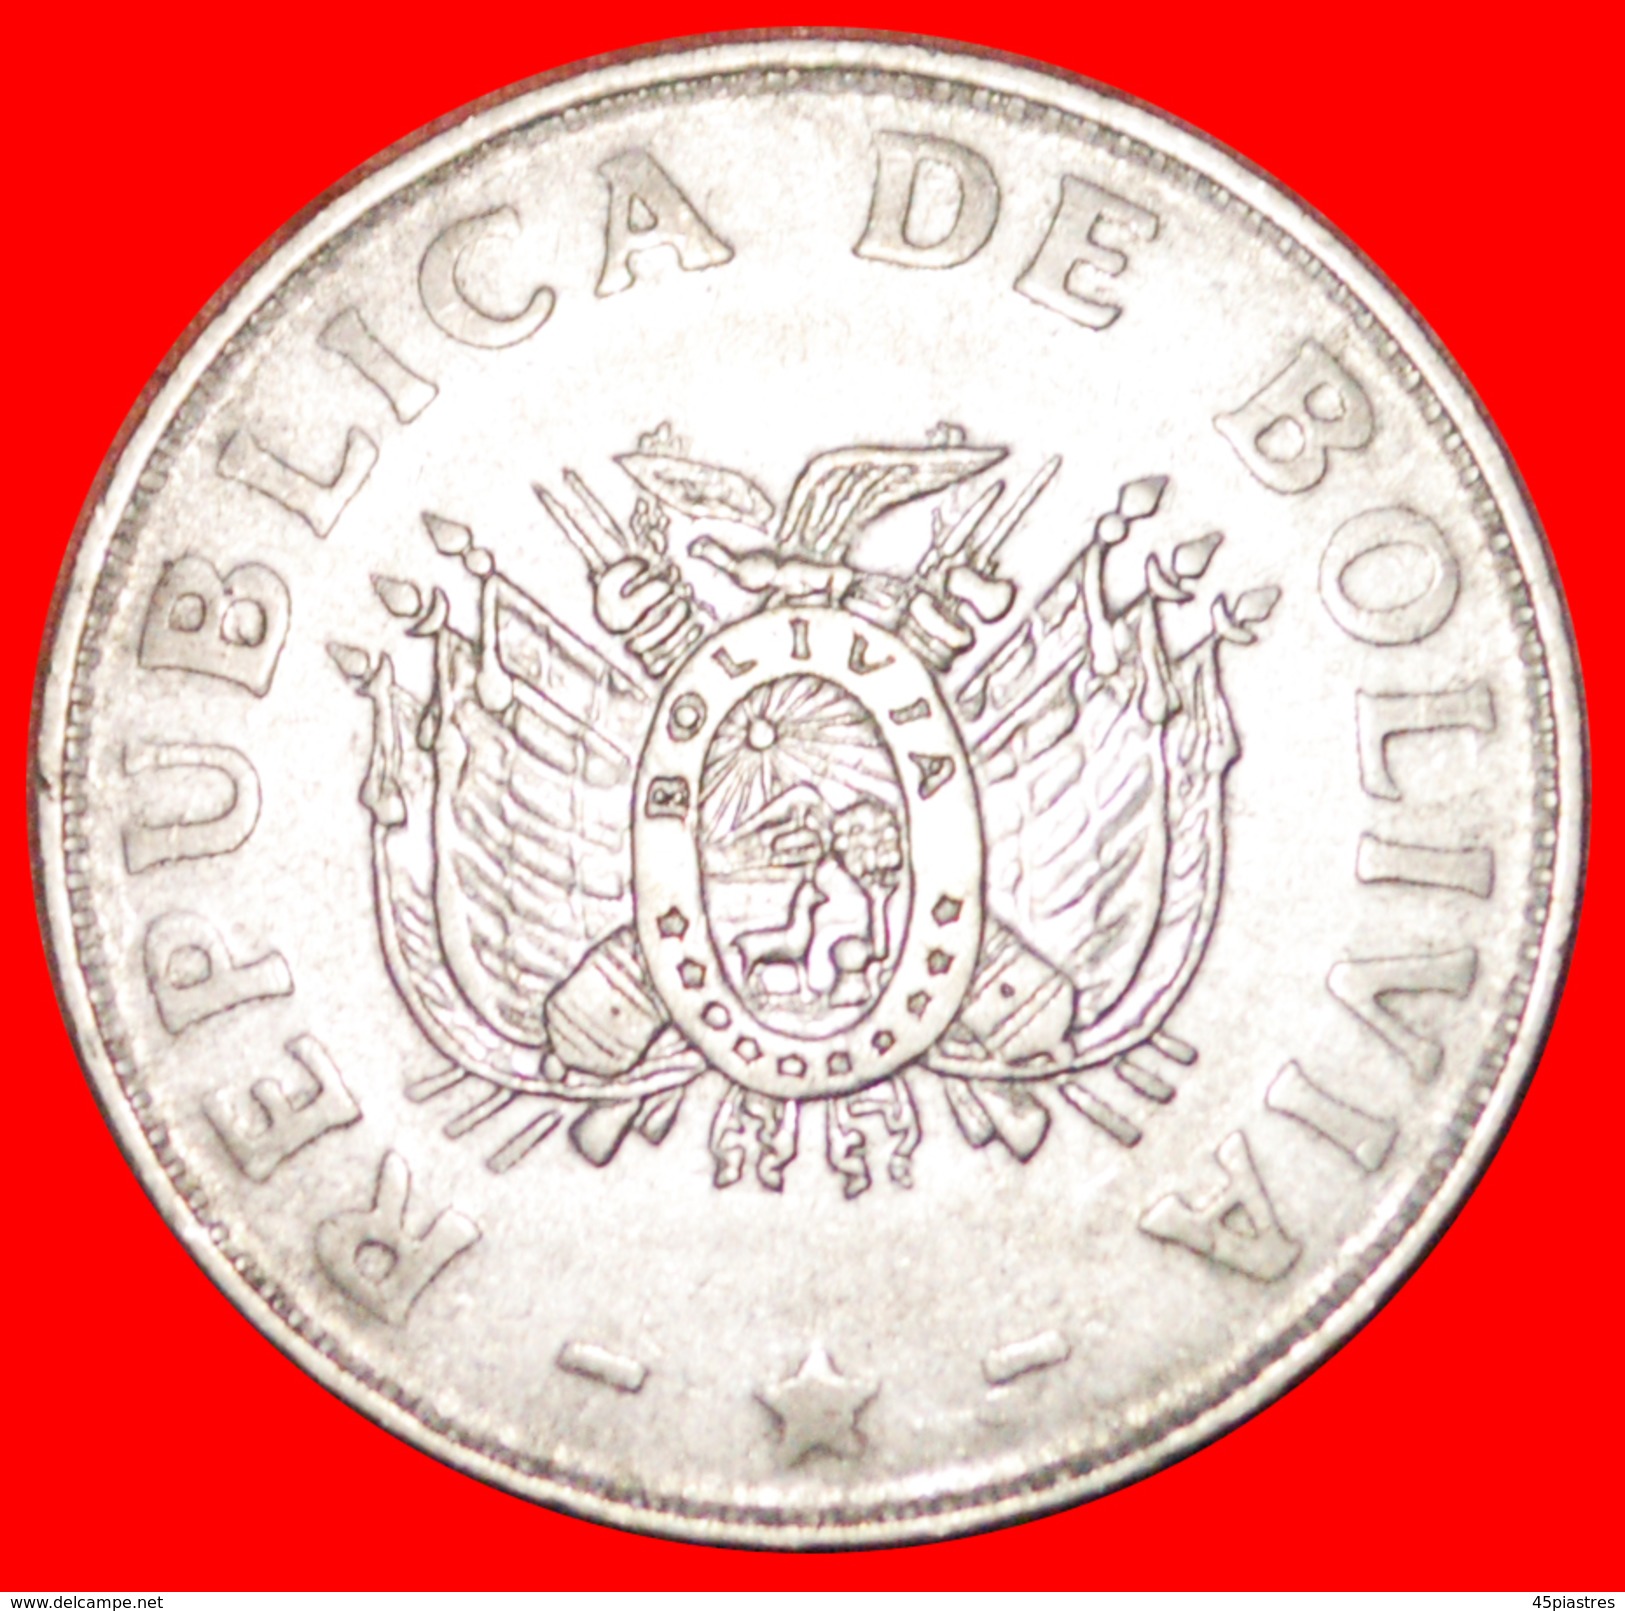 § SUN: BOLIVIA &#x2605; 50 CENTAVOS 1991! LOW START&#x2605; NO RESERVE! - Bolivia